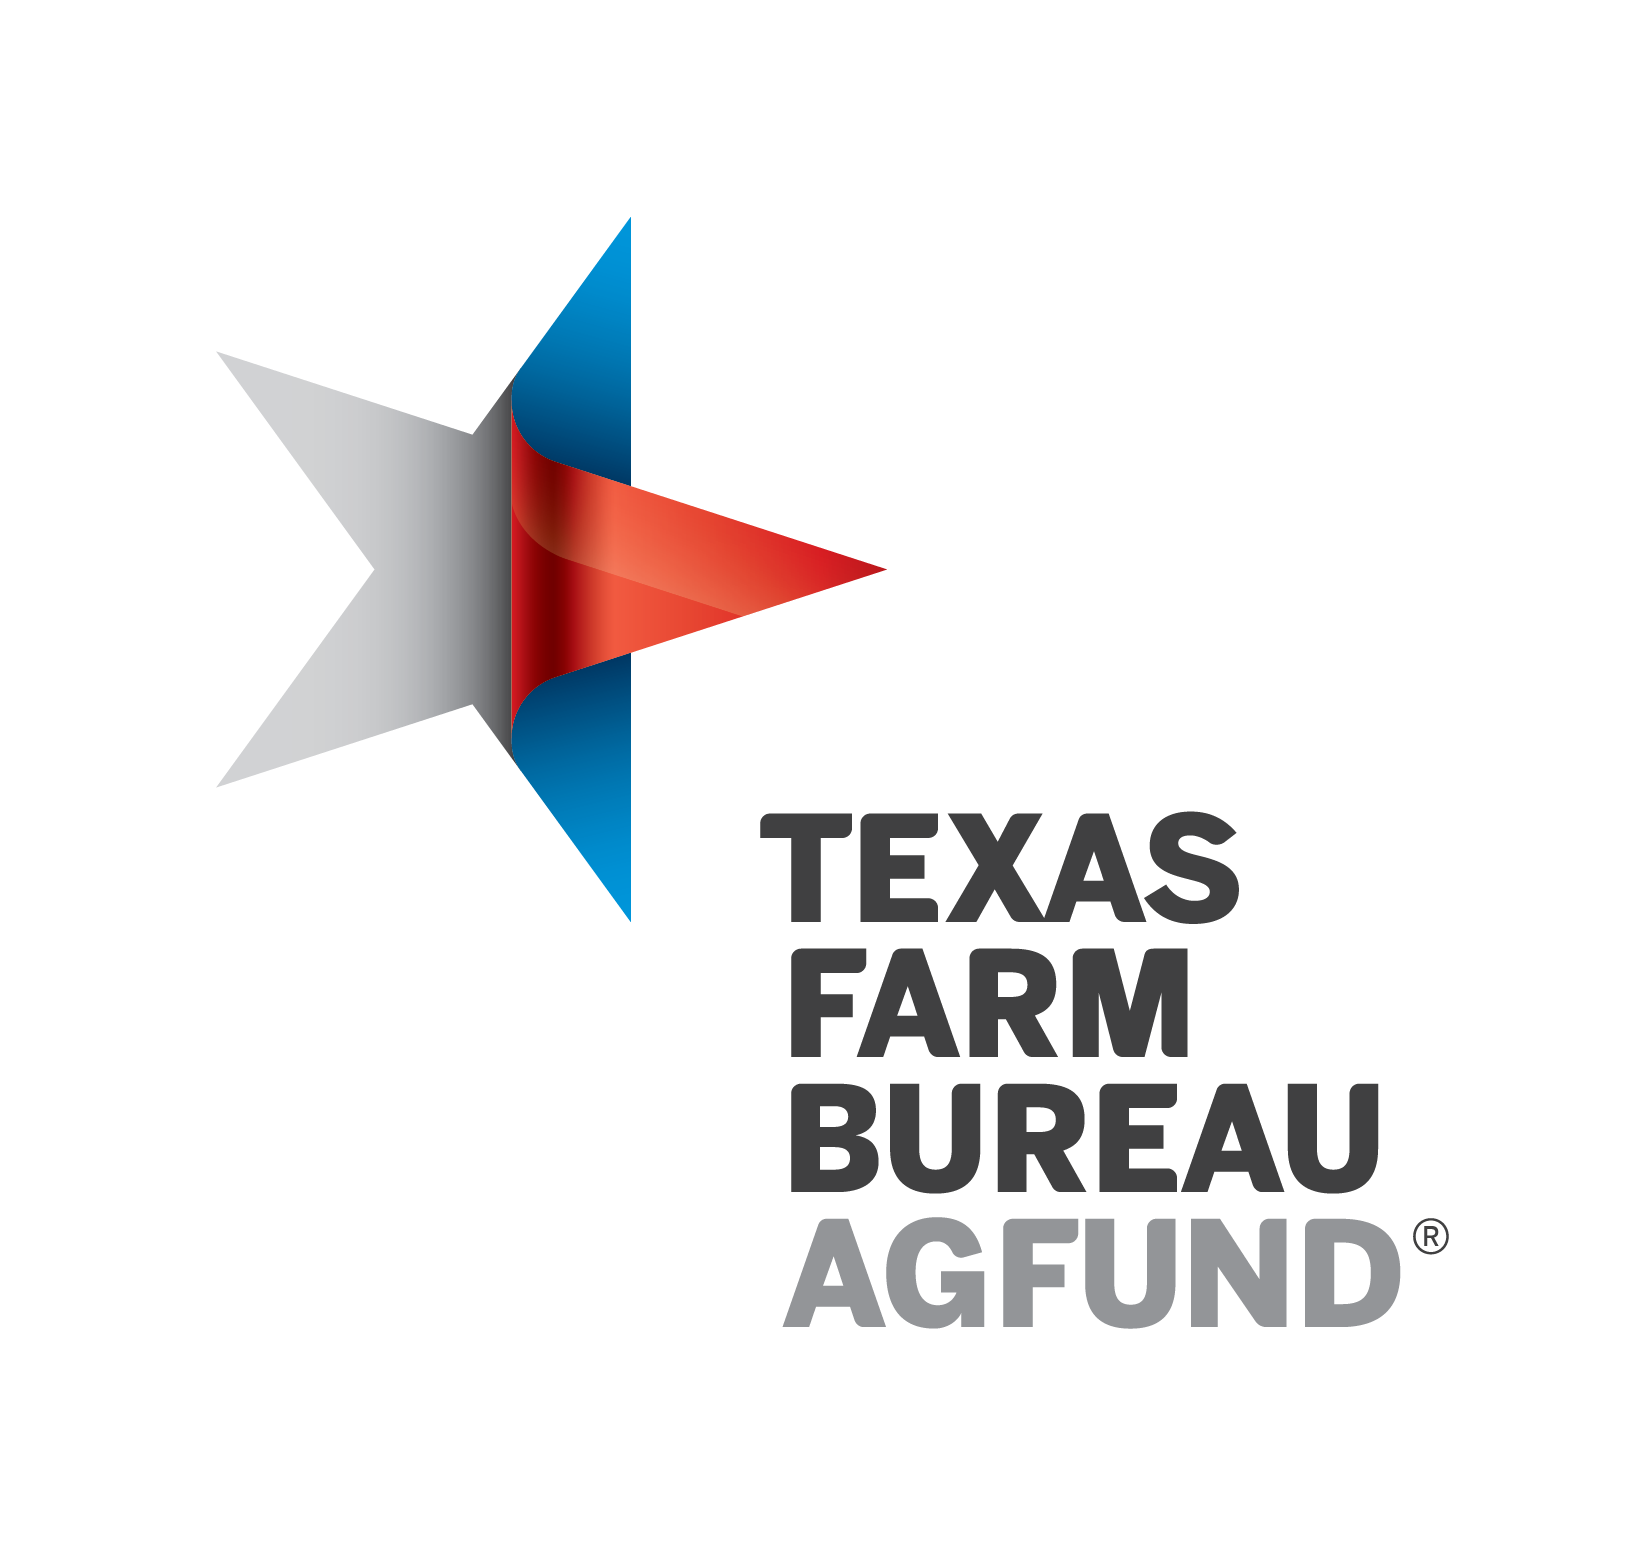 Texas Farm Bureau Agfund